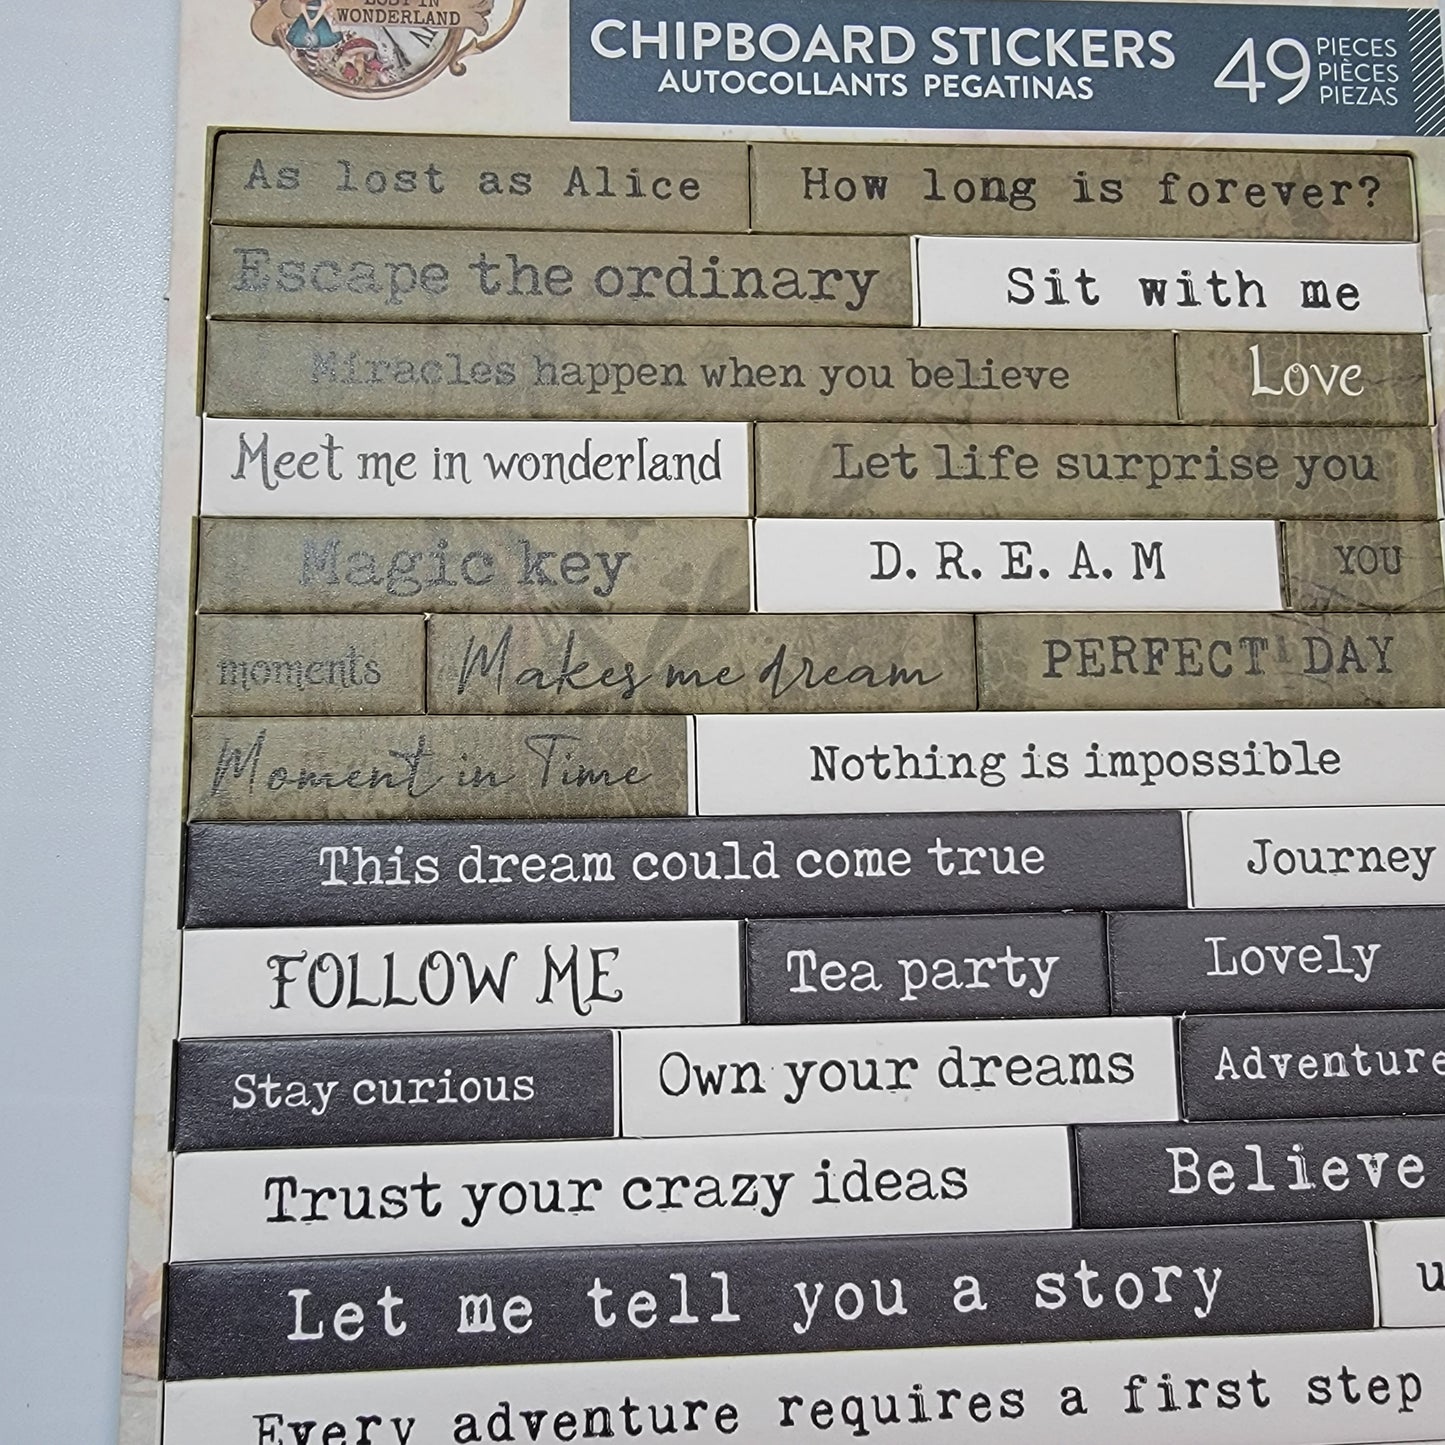 Lost in Wonderland Chipboard Stickers